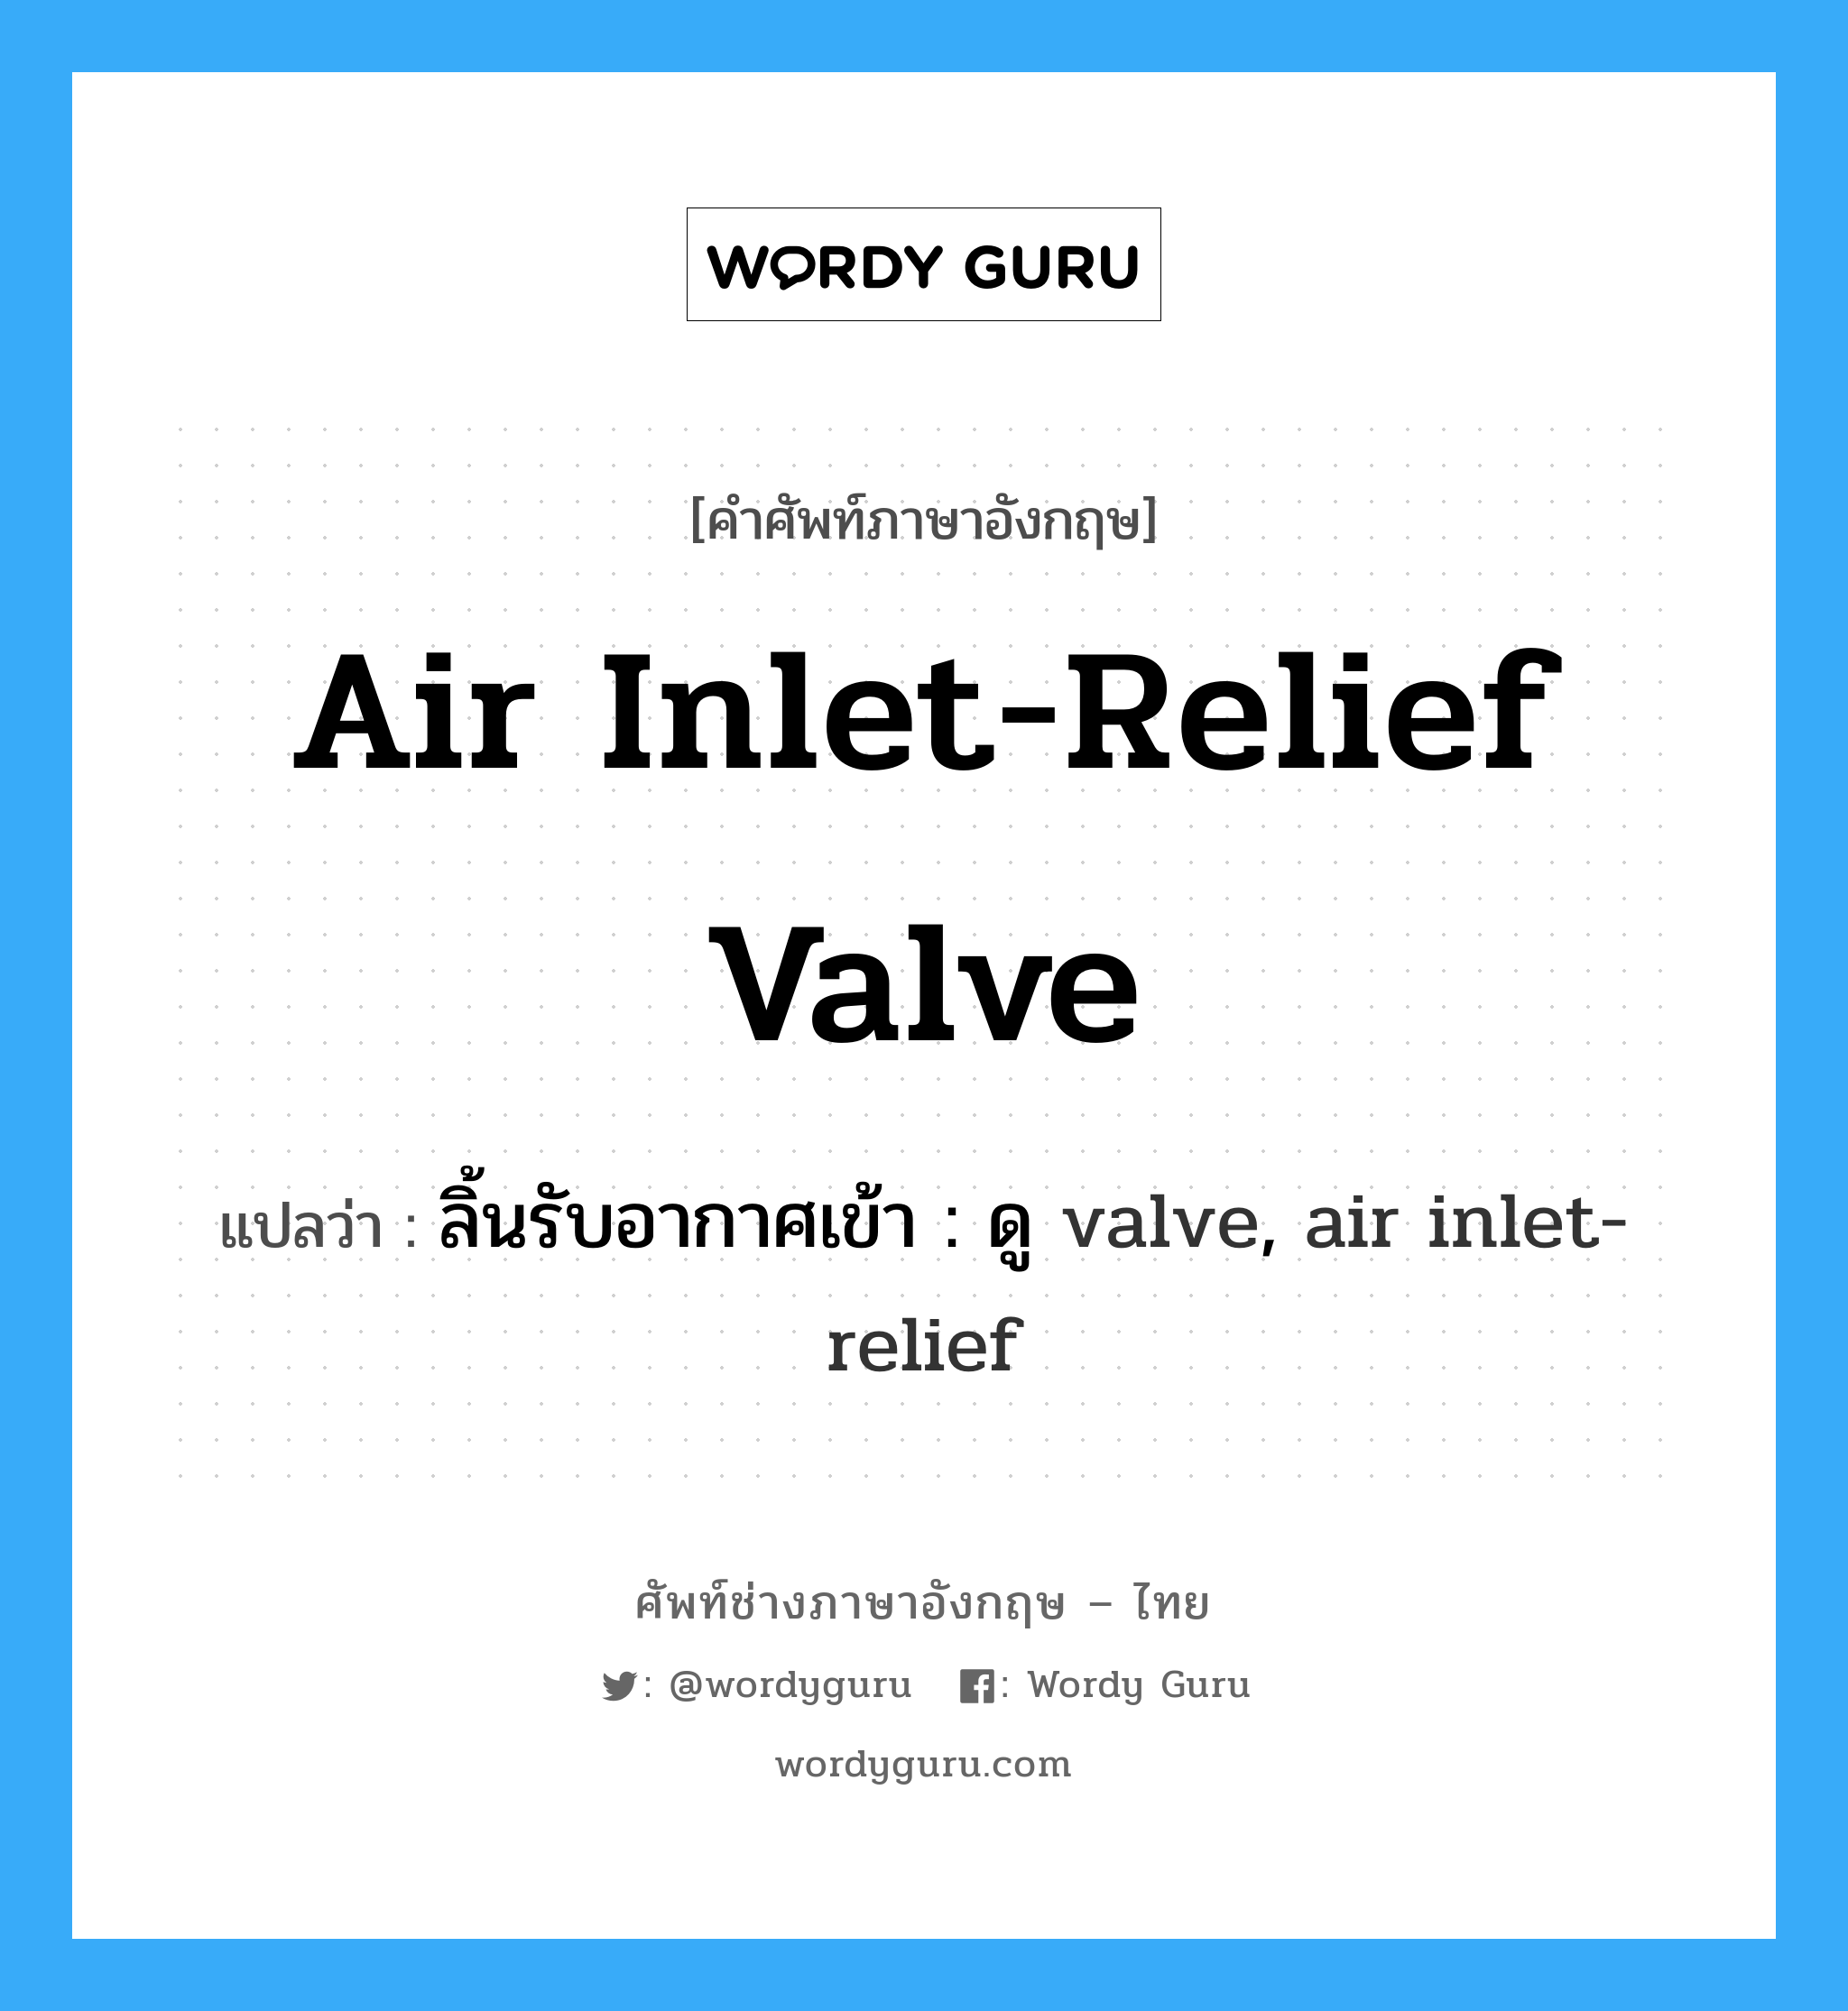 ลิ้นรับอากาศเข้า : ดู valve, air inlet-relief ภาษาอังกฤษ?, คำศัพท์ช่างภาษาอังกฤษ - ไทย ลิ้นรับอากาศเข้า : ดู valve, air inlet-relief คำศัพท์ภาษาอังกฤษ ลิ้นรับอากาศเข้า : ดู valve, air inlet-relief แปลว่า air inlet-relief valve